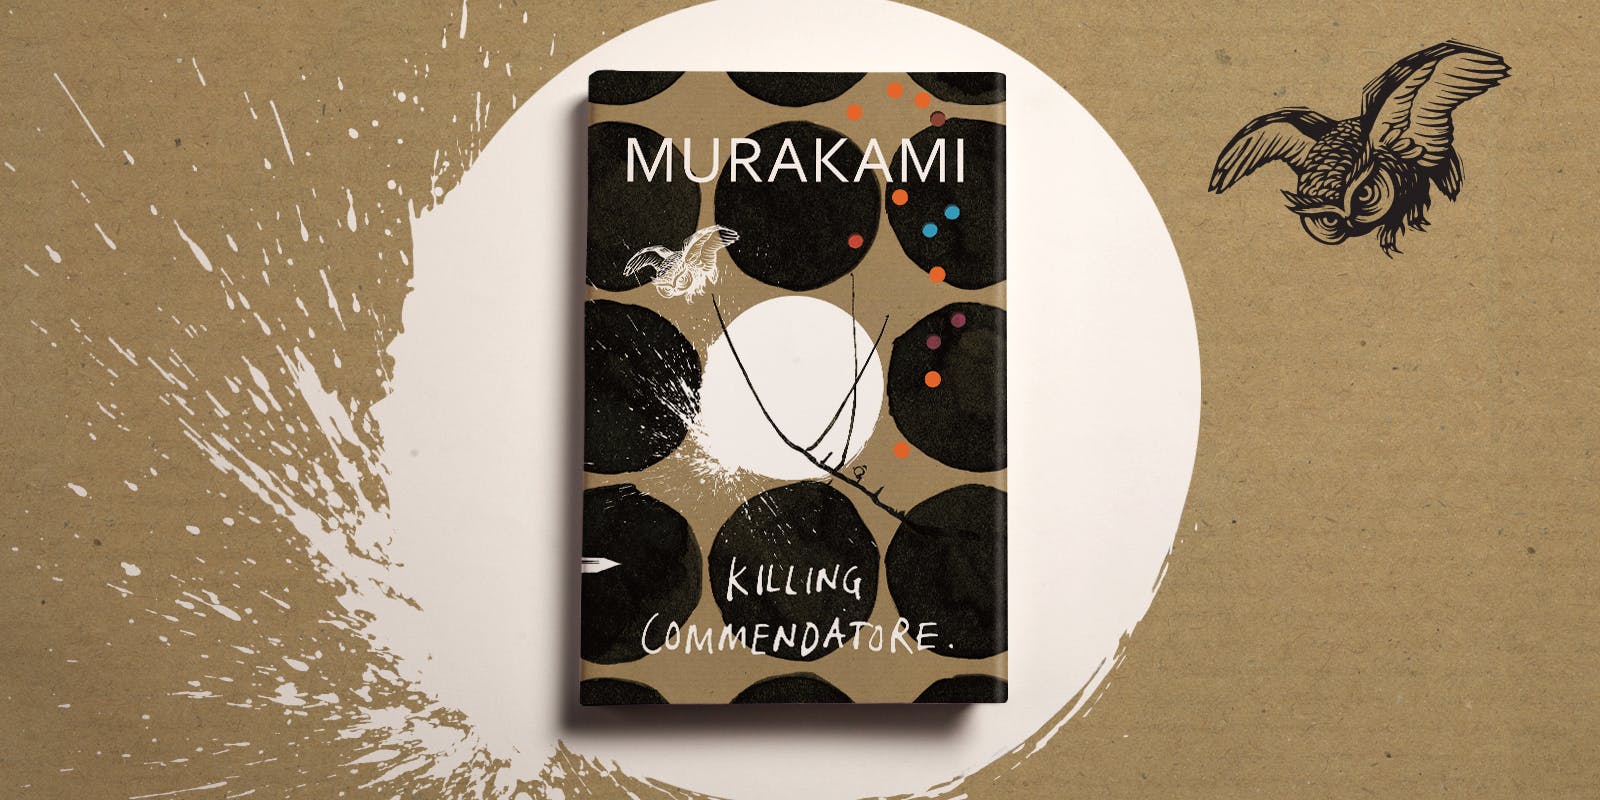 فروشگاه کتاب زبان ملت | کتاب رمان Killing Commendatore اثر هاروکی موراکامی | خرید رمان کشتن کمنداتور